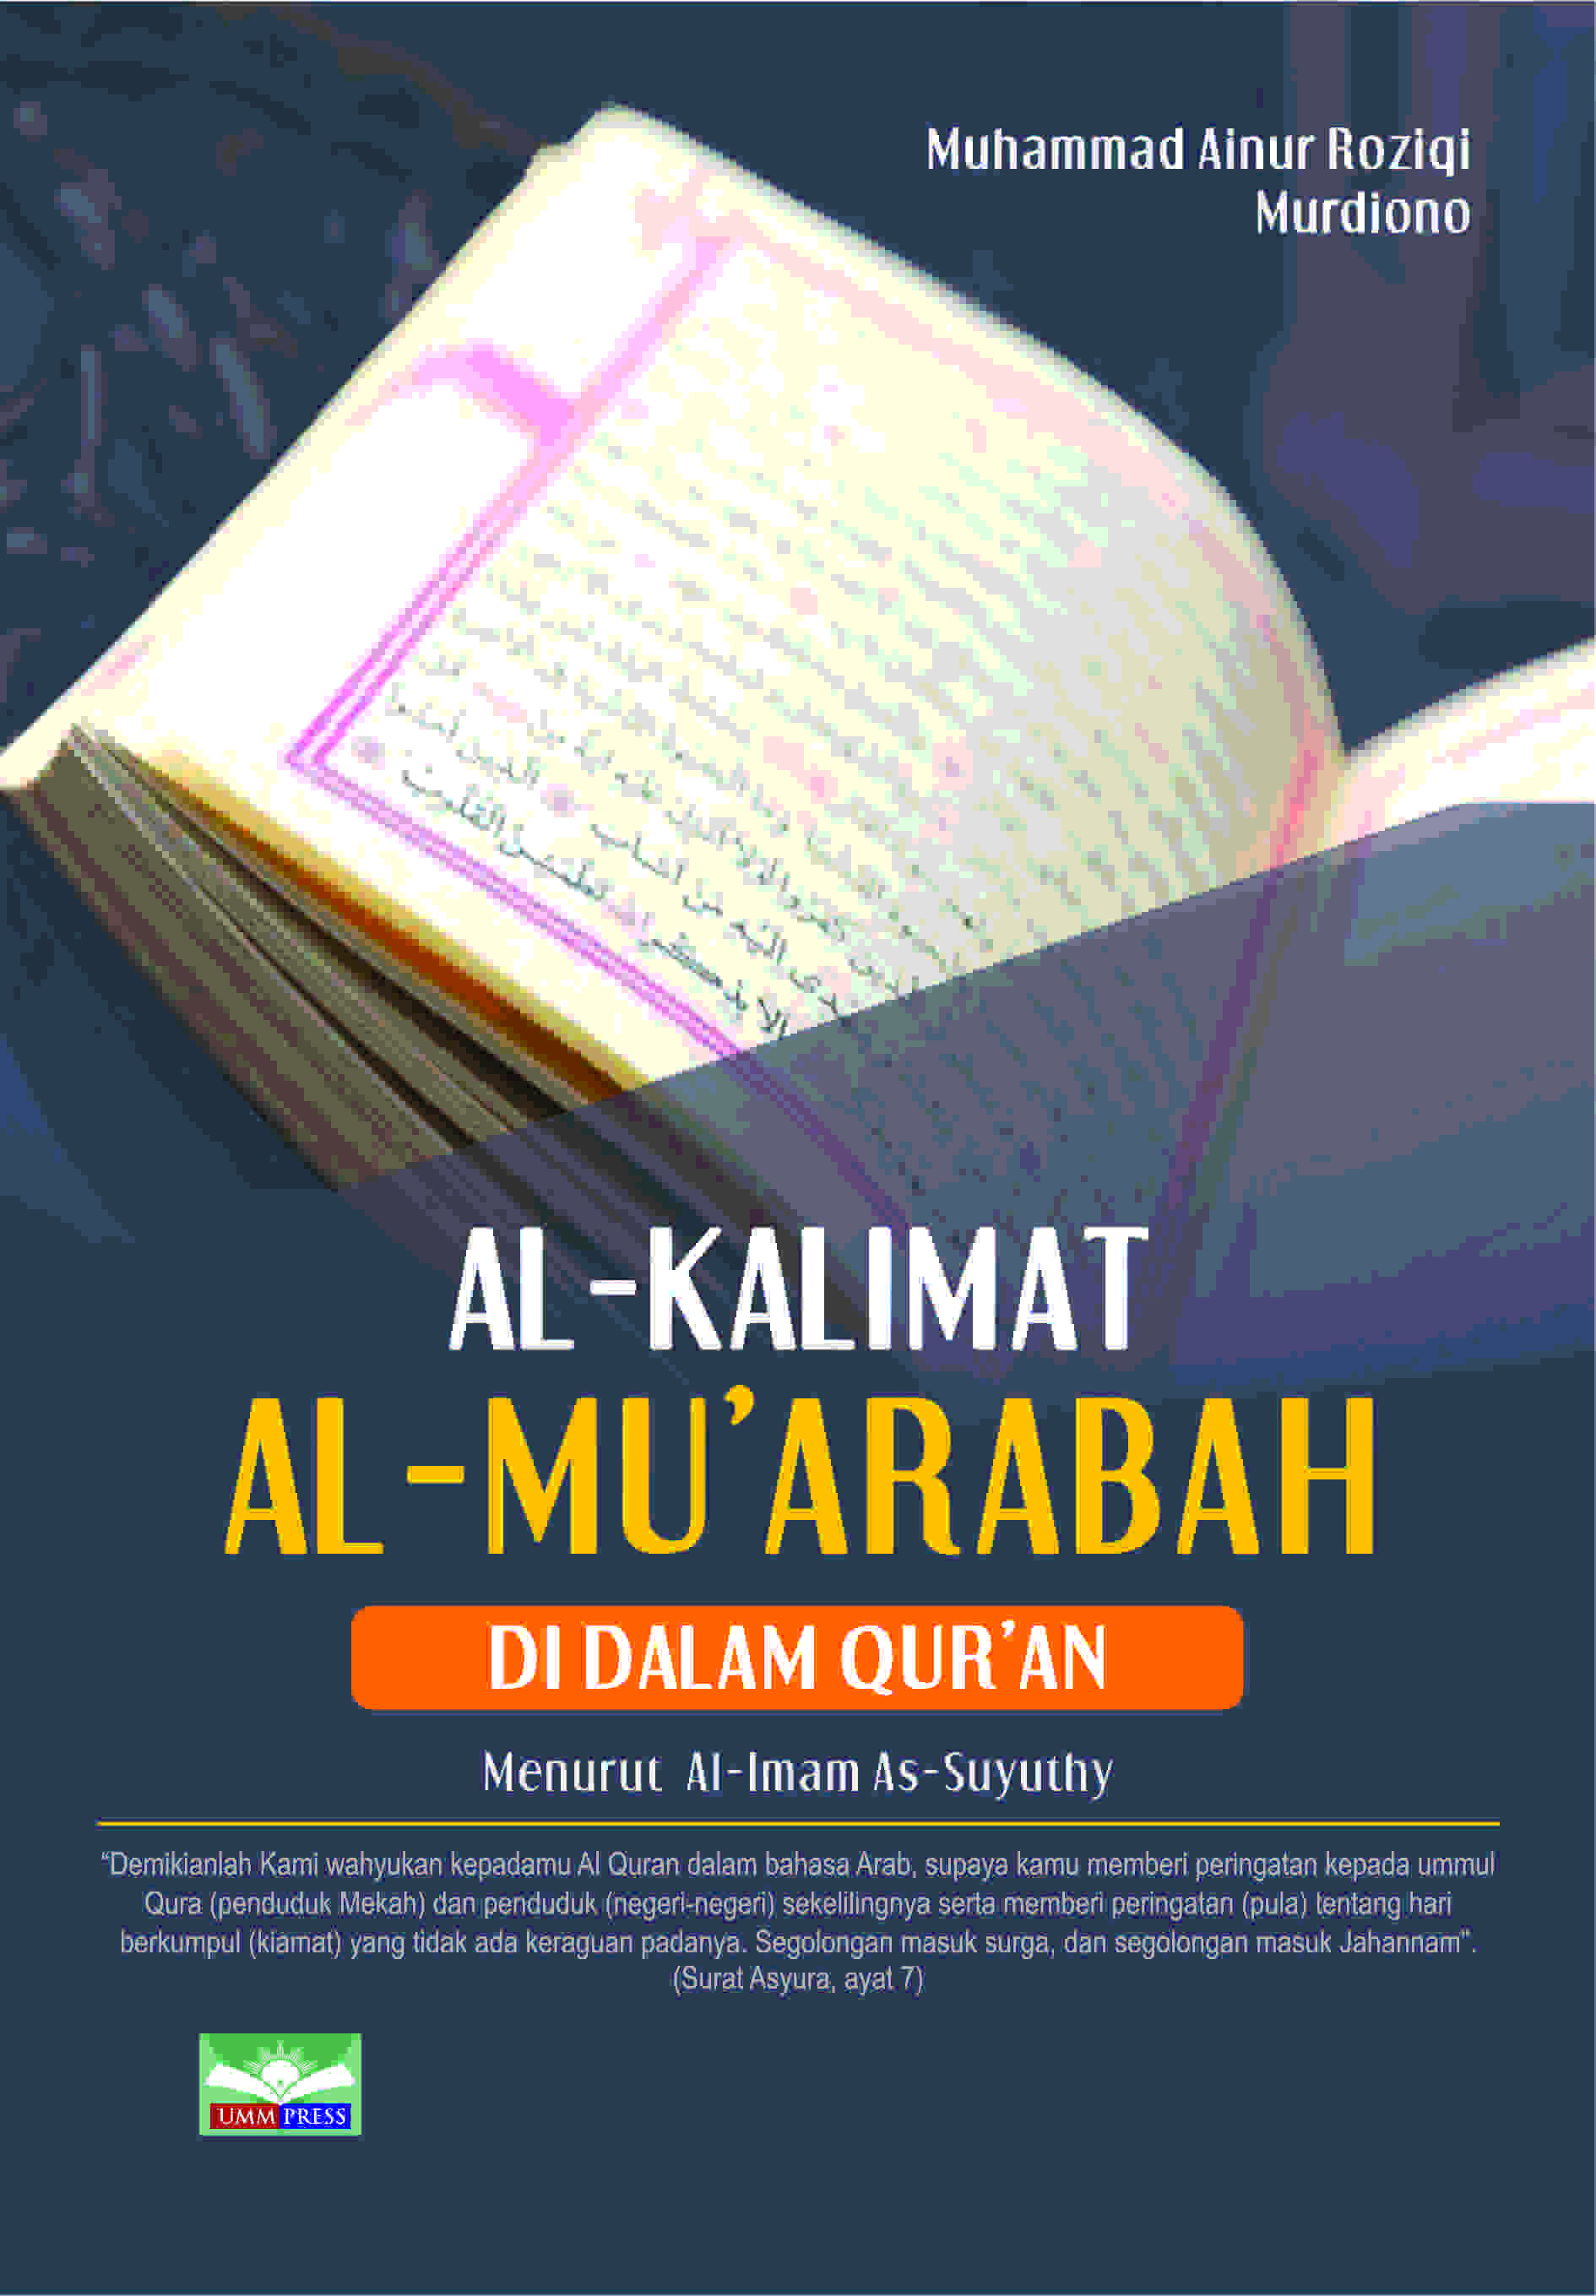 AL-KALIMAT AL-MU’ARABAH DI DALAM AL-QUR’AN: MENURUT AL-IMAM AS-SUYUTHY